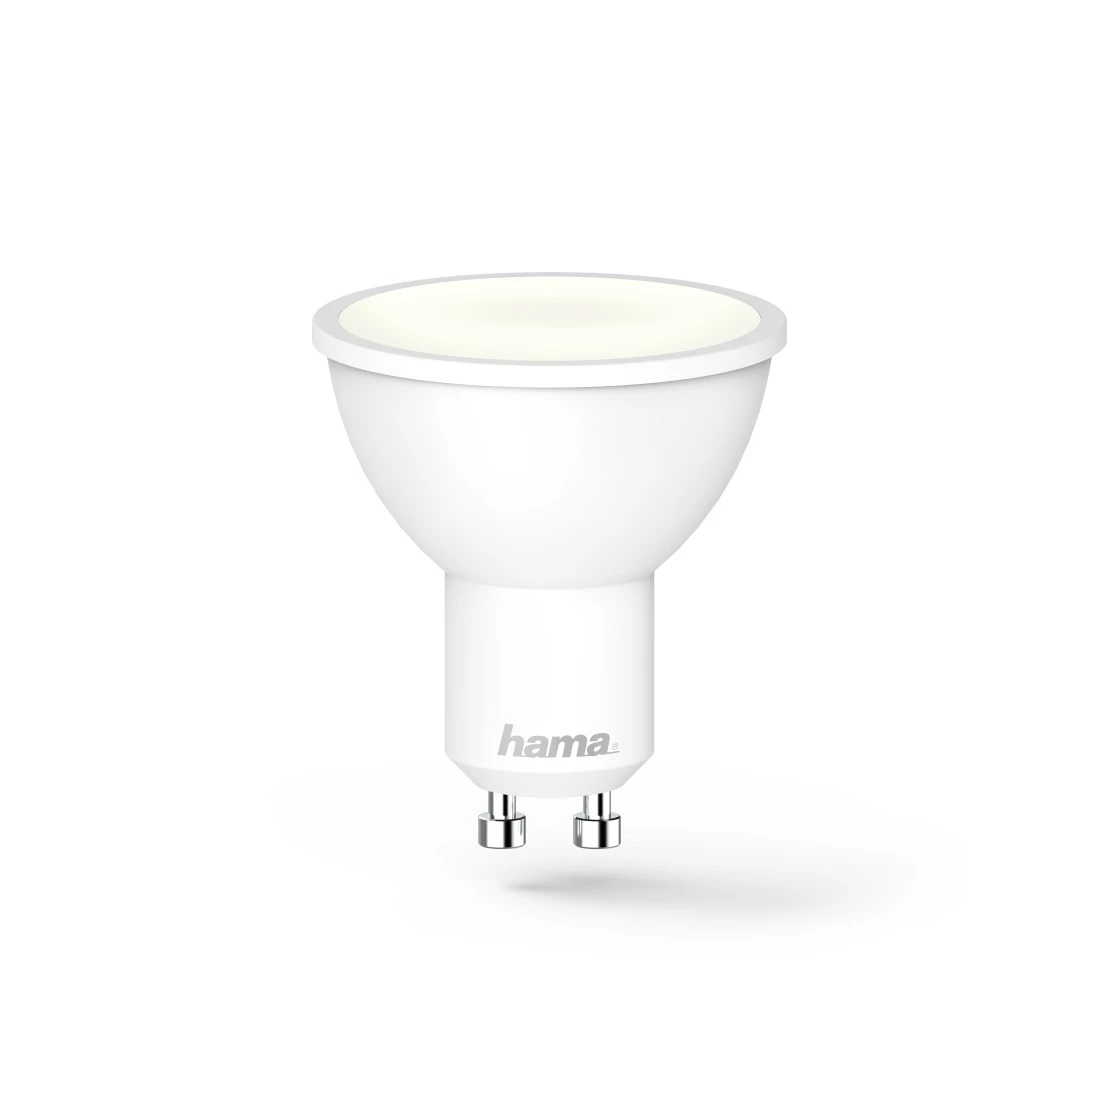 Sprach-/App-Steuerung, WLAN-LED-Lampe, dimmbar, | 5,5W, GU10, Hama Refl., für Weiß